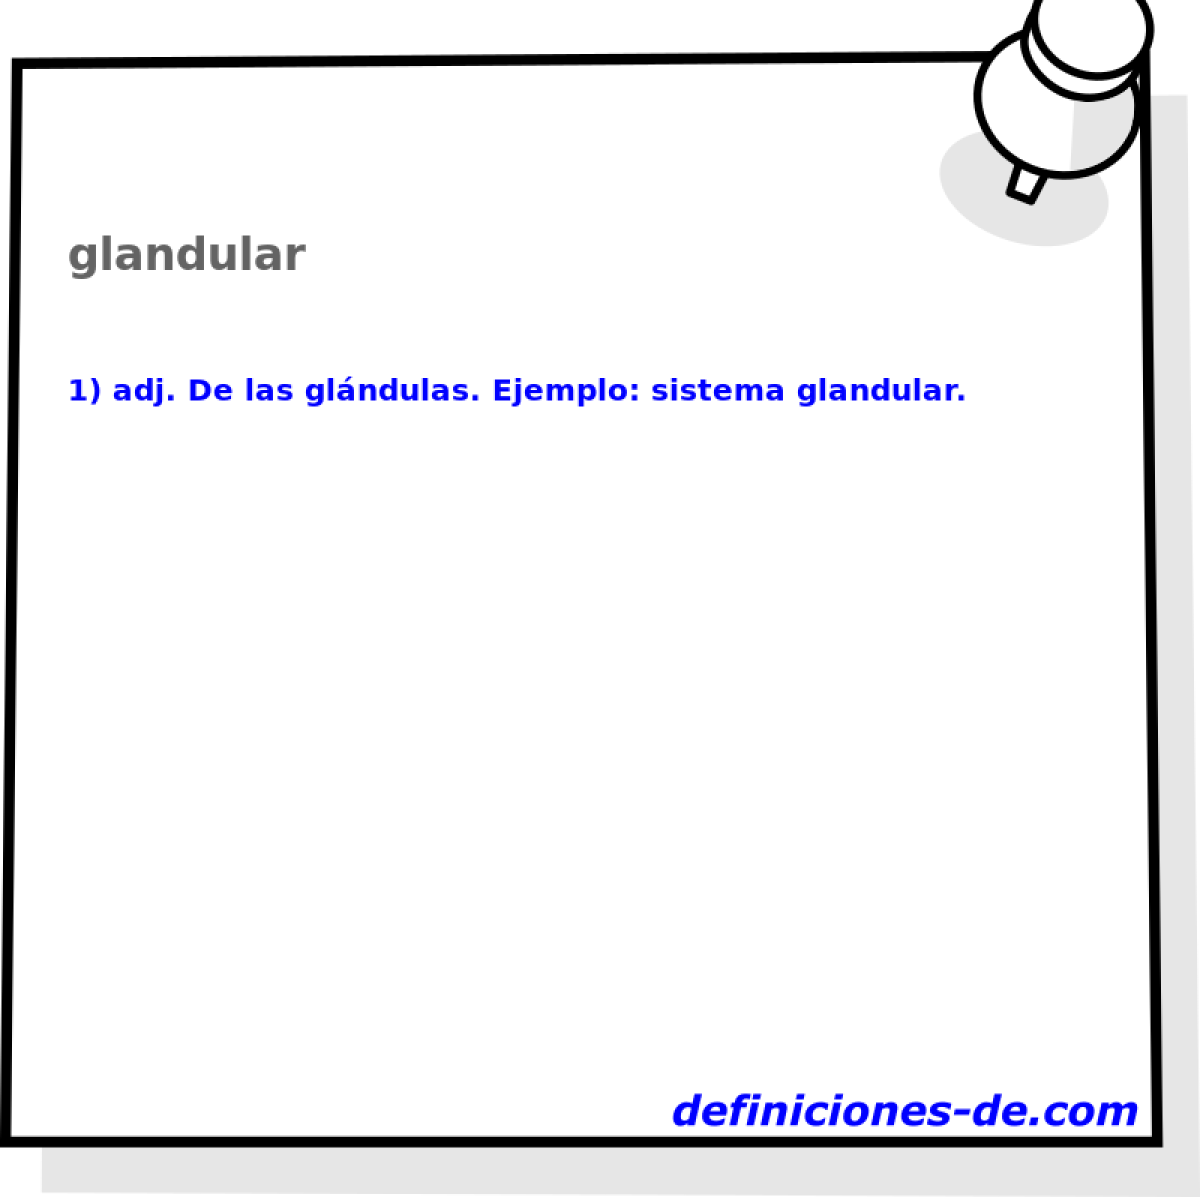 glandular 